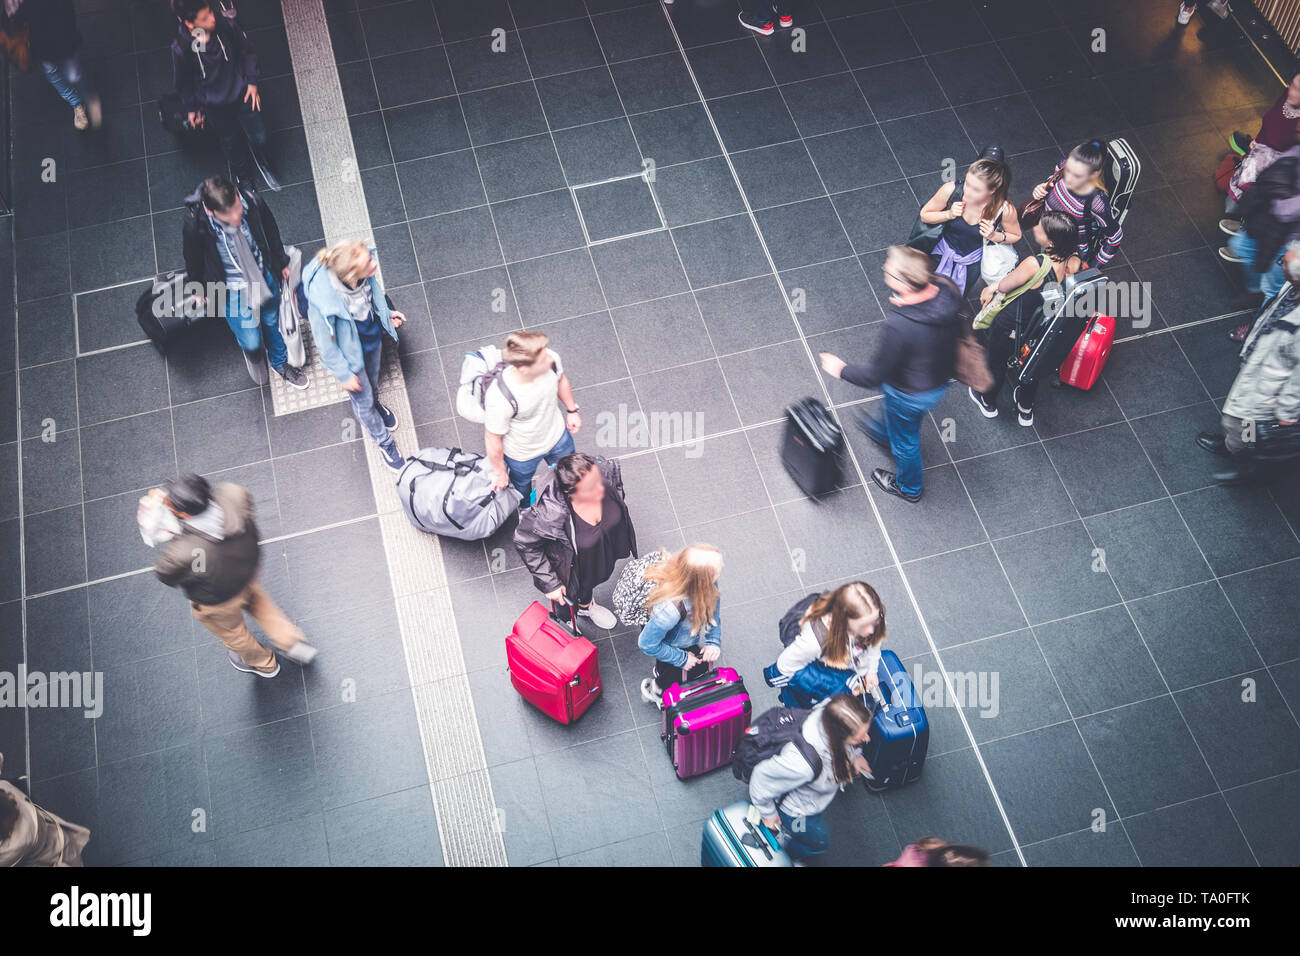 Berlin, Allemagne - Mai 2019 : Groupe de personnes âgées avec des bagages à l'entrée de la plate-forme de la gare S-Bahn de Berlin à Hauptnbahnhof Banque D'Images